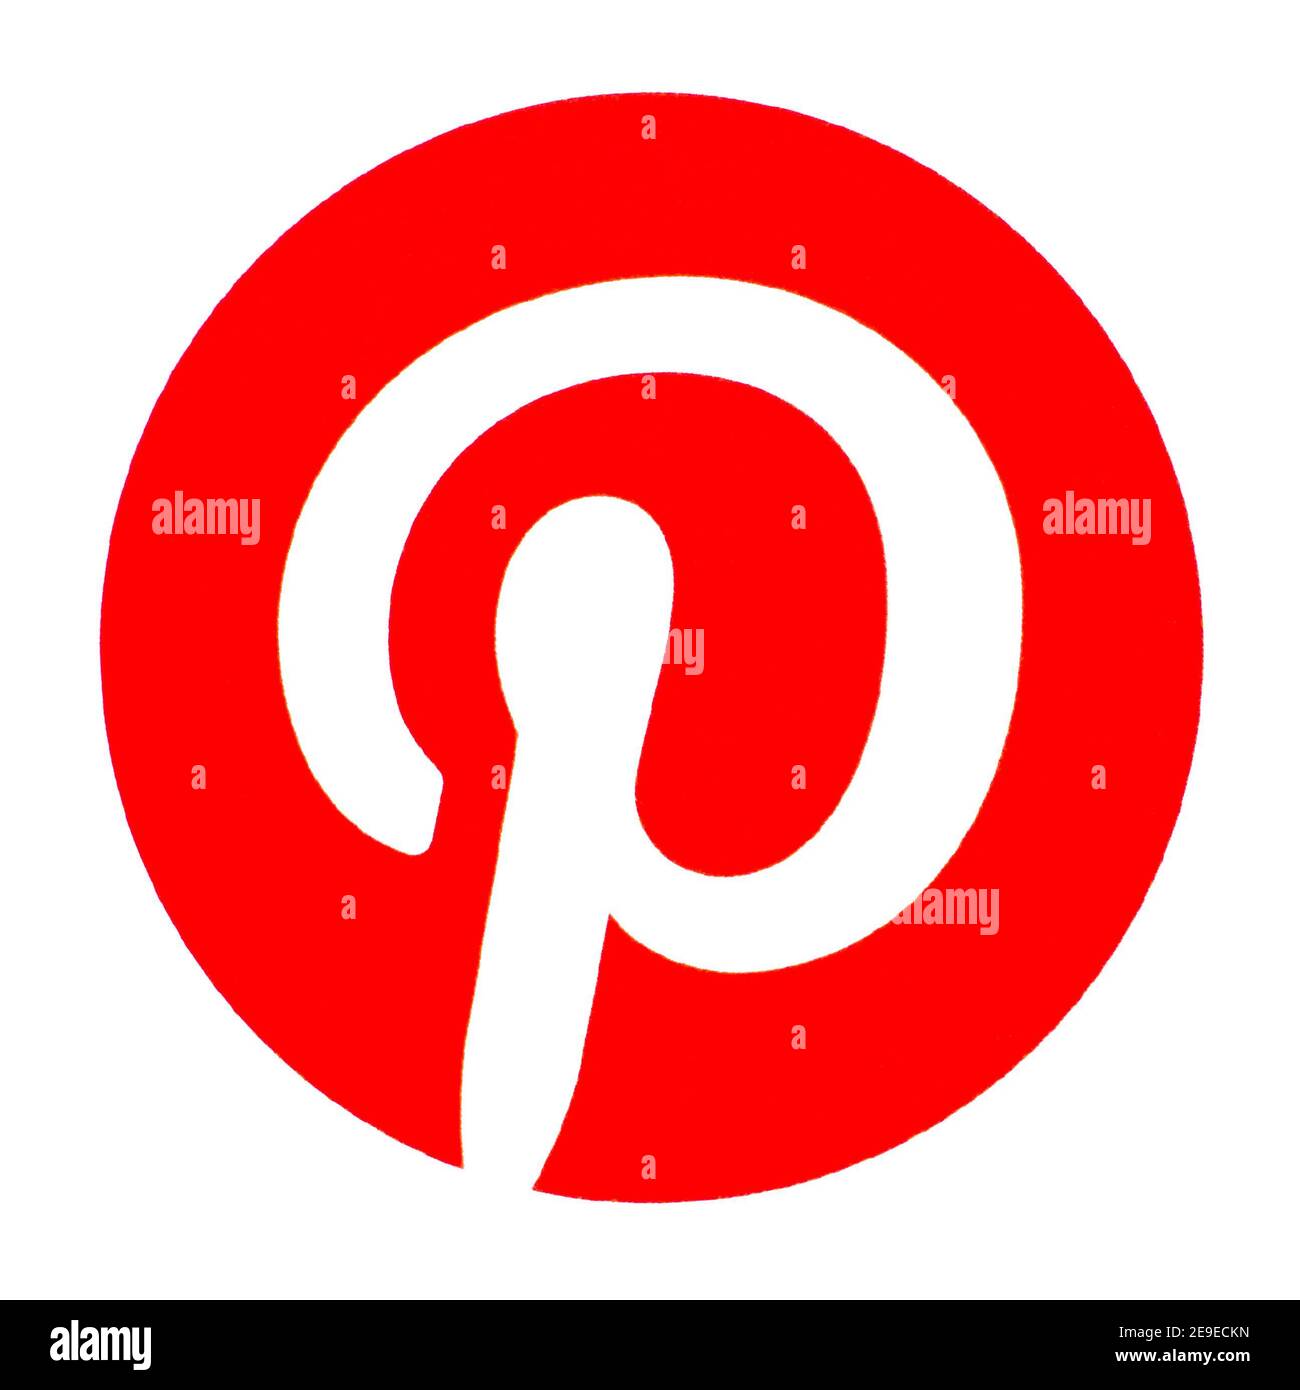 Logo Pinterest stampato su carta. Pinterest è una società di applicazioni web e mobile, che gestisce un eponimo sito di condivisione foto Foto Stock